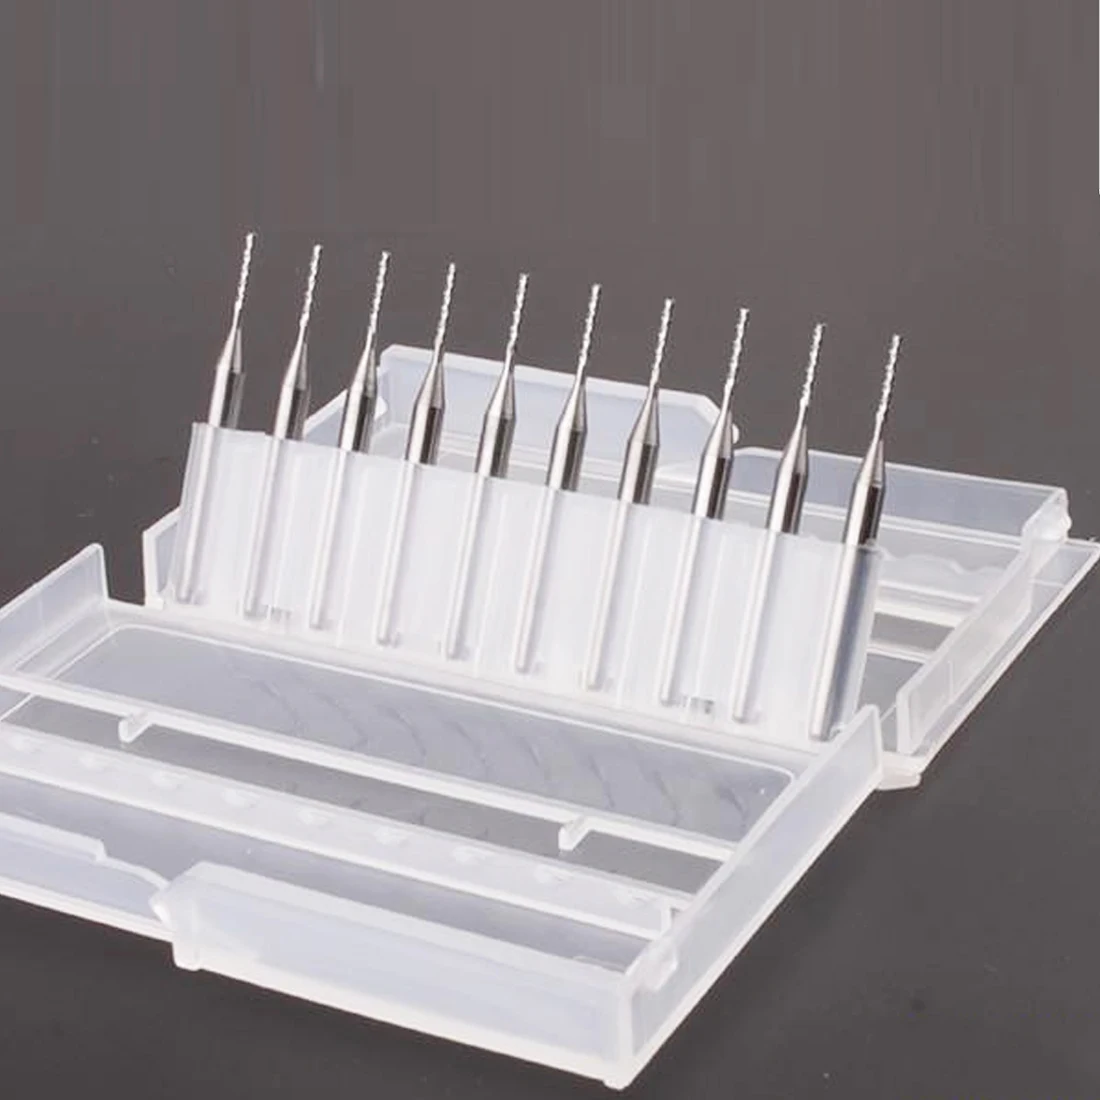 Carboneto de tungstênio da micro mini broca 10PCS de 0,3 mm a 1,2 mm PCB broca CNC, ferramentas para madeira Cor Aleatória impressora 3D acessórios